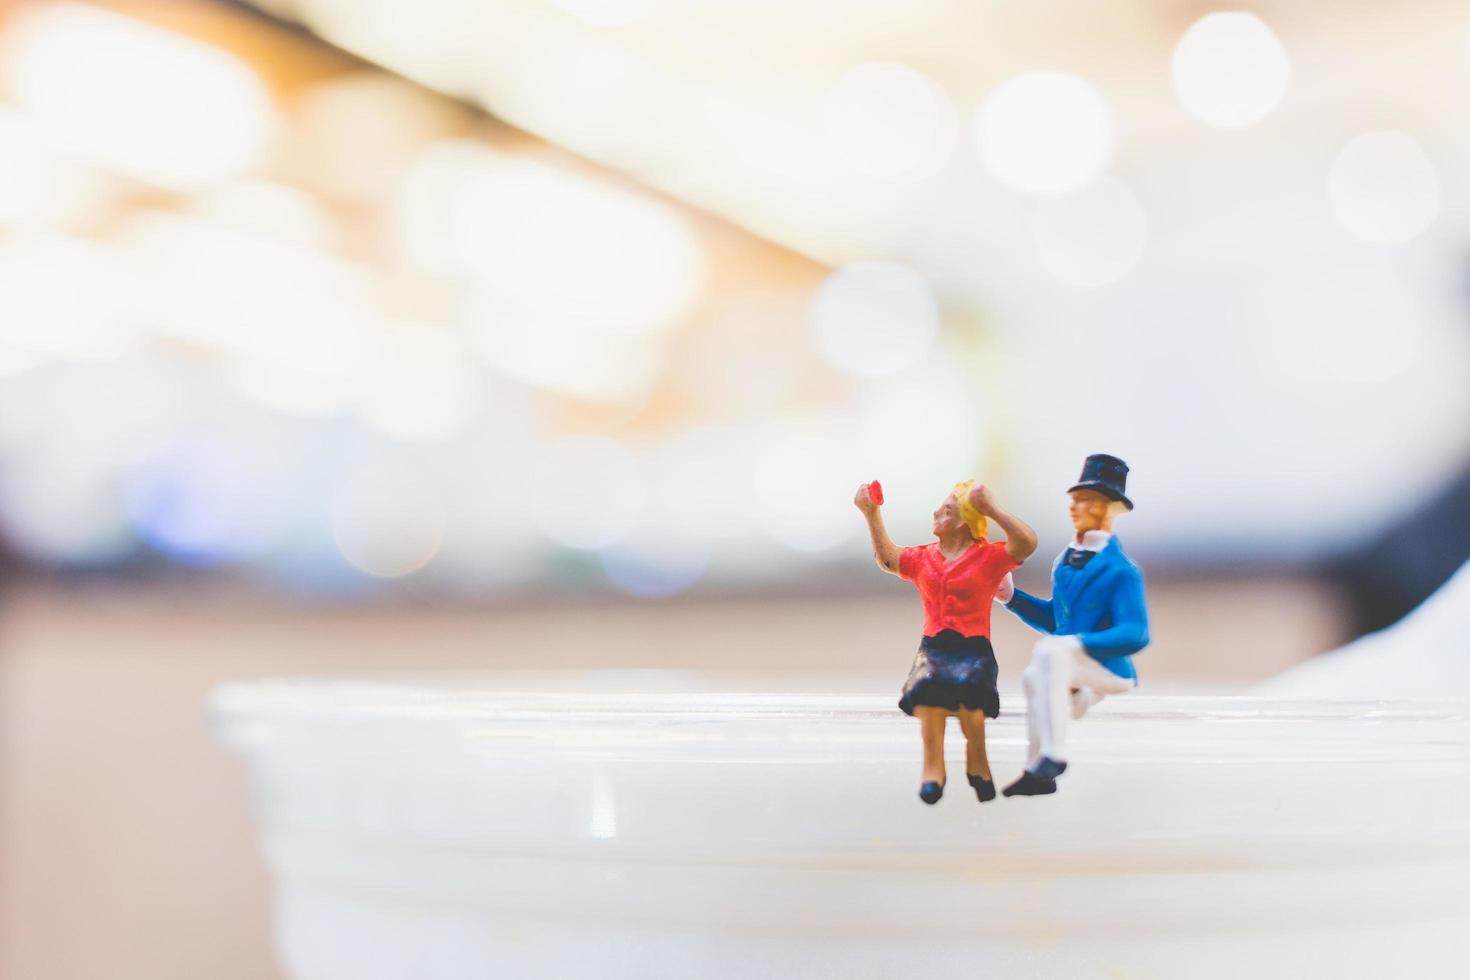 Miniaturpaar sitzt auf einer Tasse, Valentinstagskonzept foto